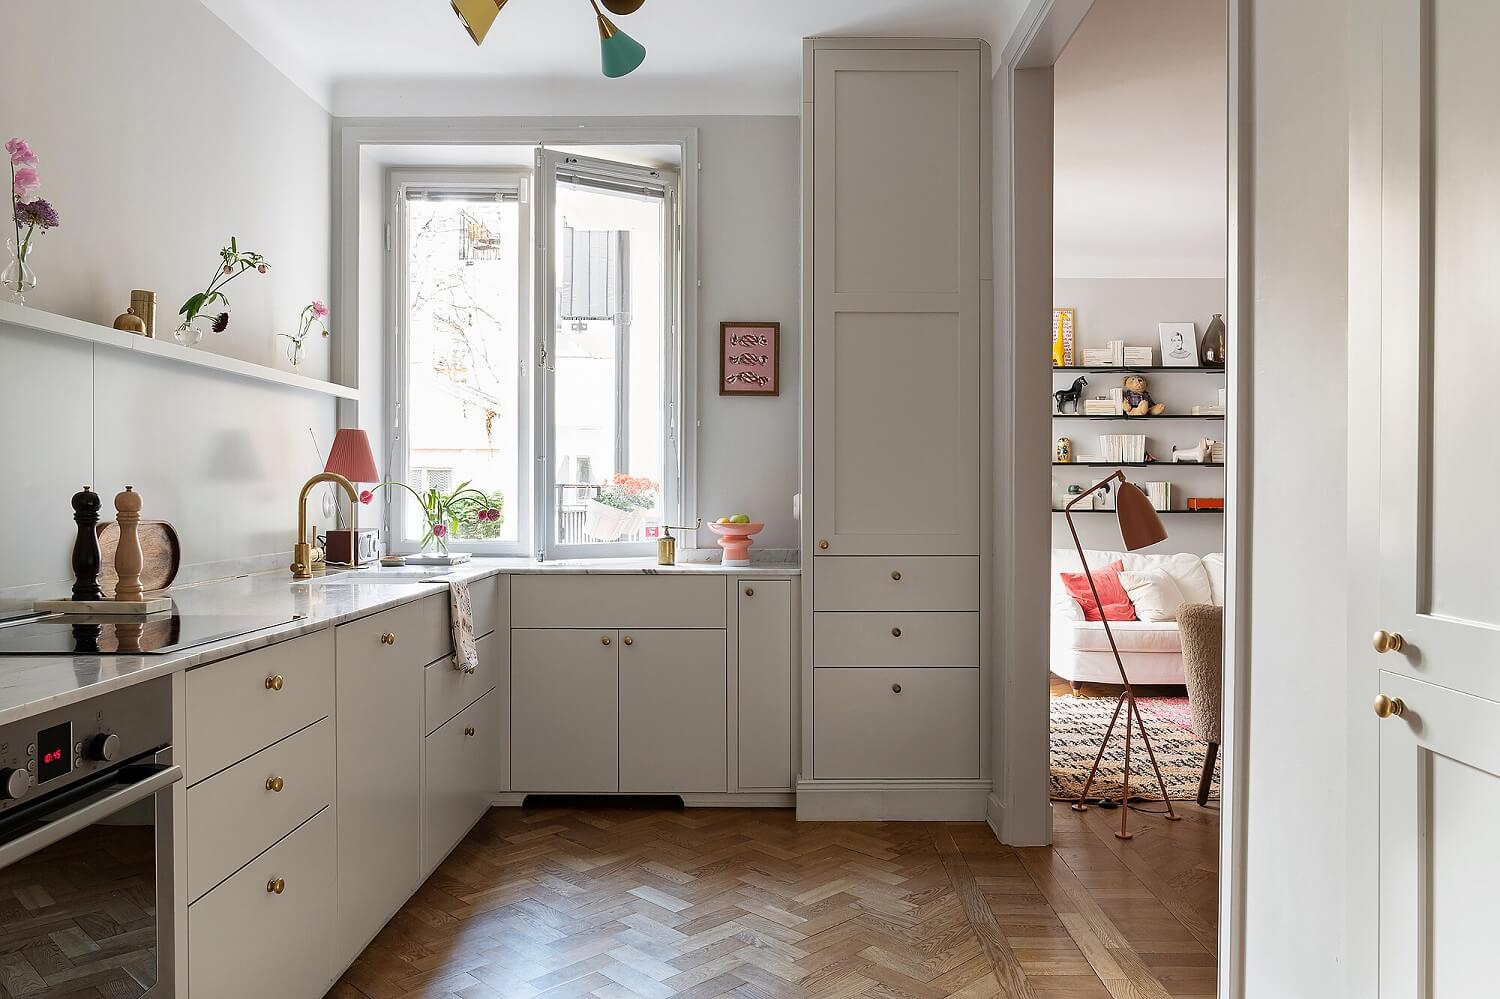 kitchen-scandinavian-design-gray-cabinets-wooden-floor-nordroom